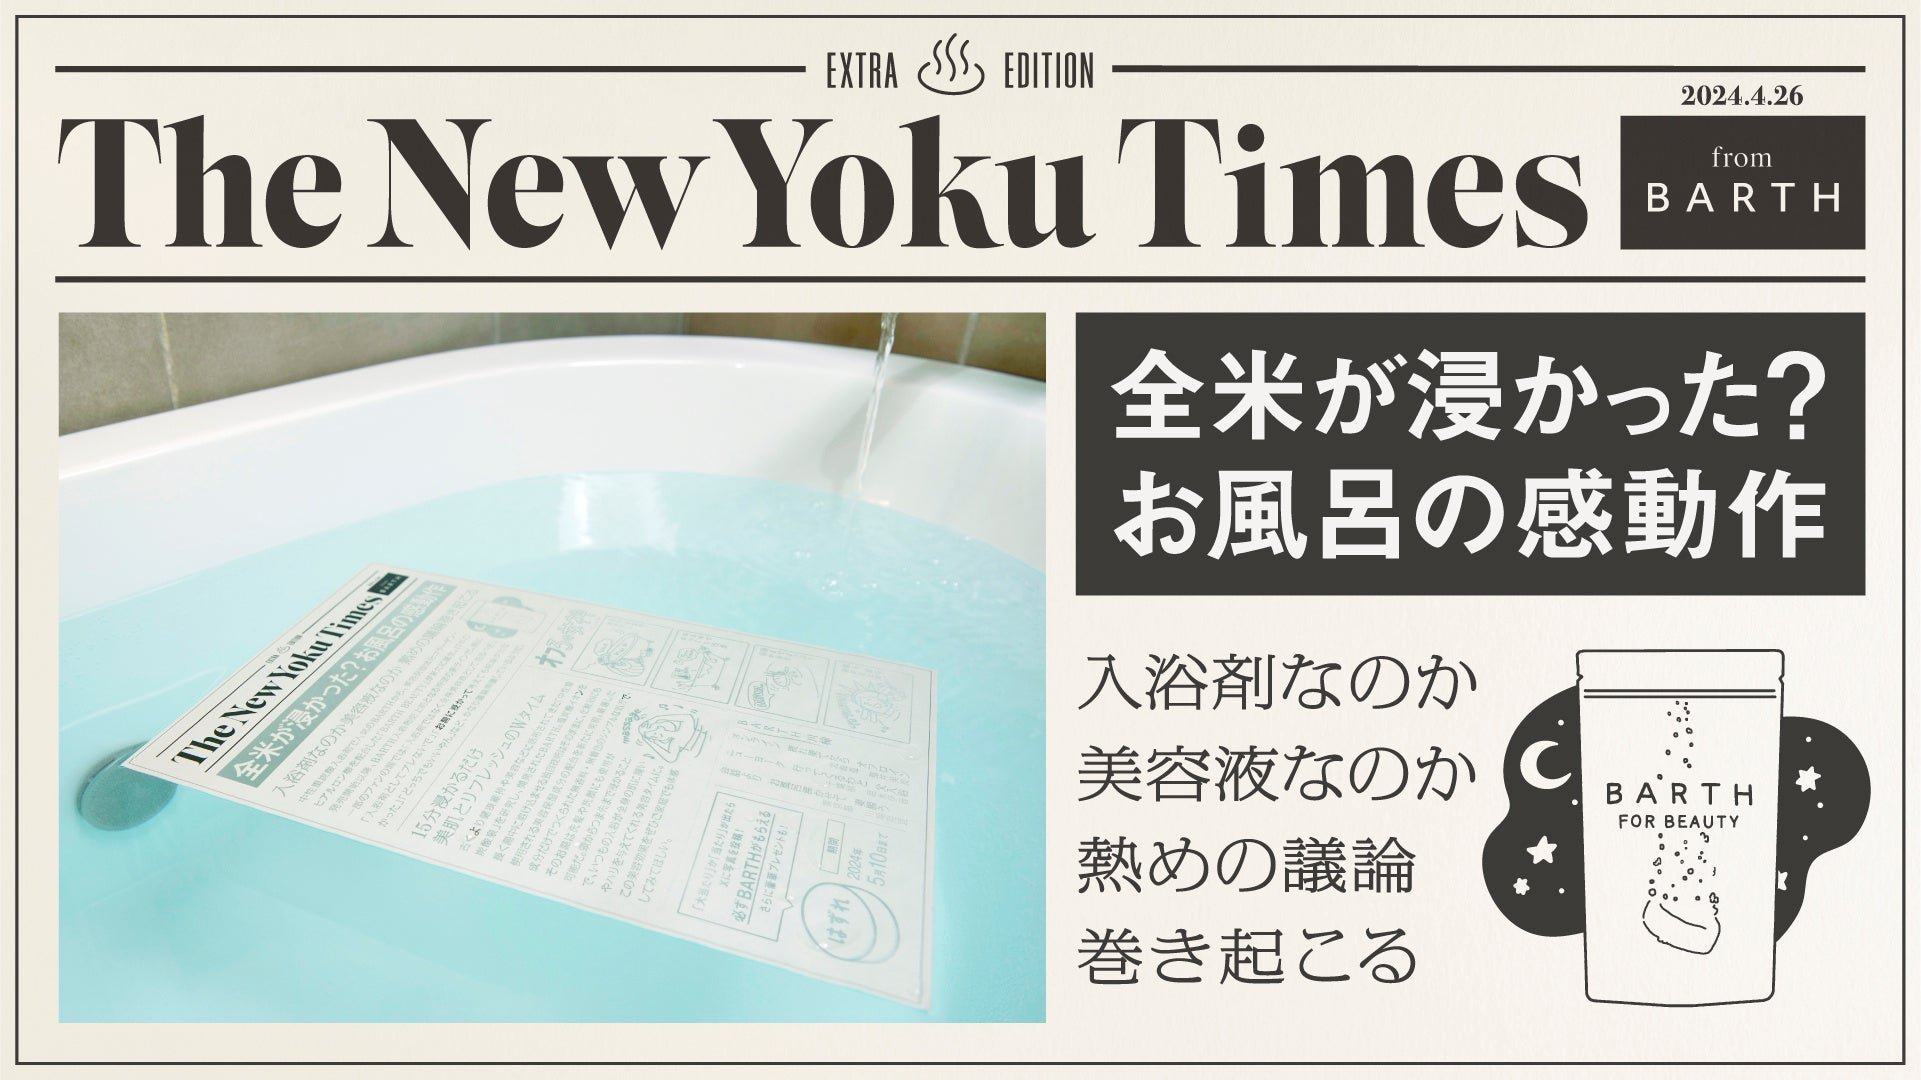 4月26日（よい風呂）の日にお風呂で読む新聞を号外配布!? BARTHが入浴時専用の号外「The New Yoku Times」を発刊！